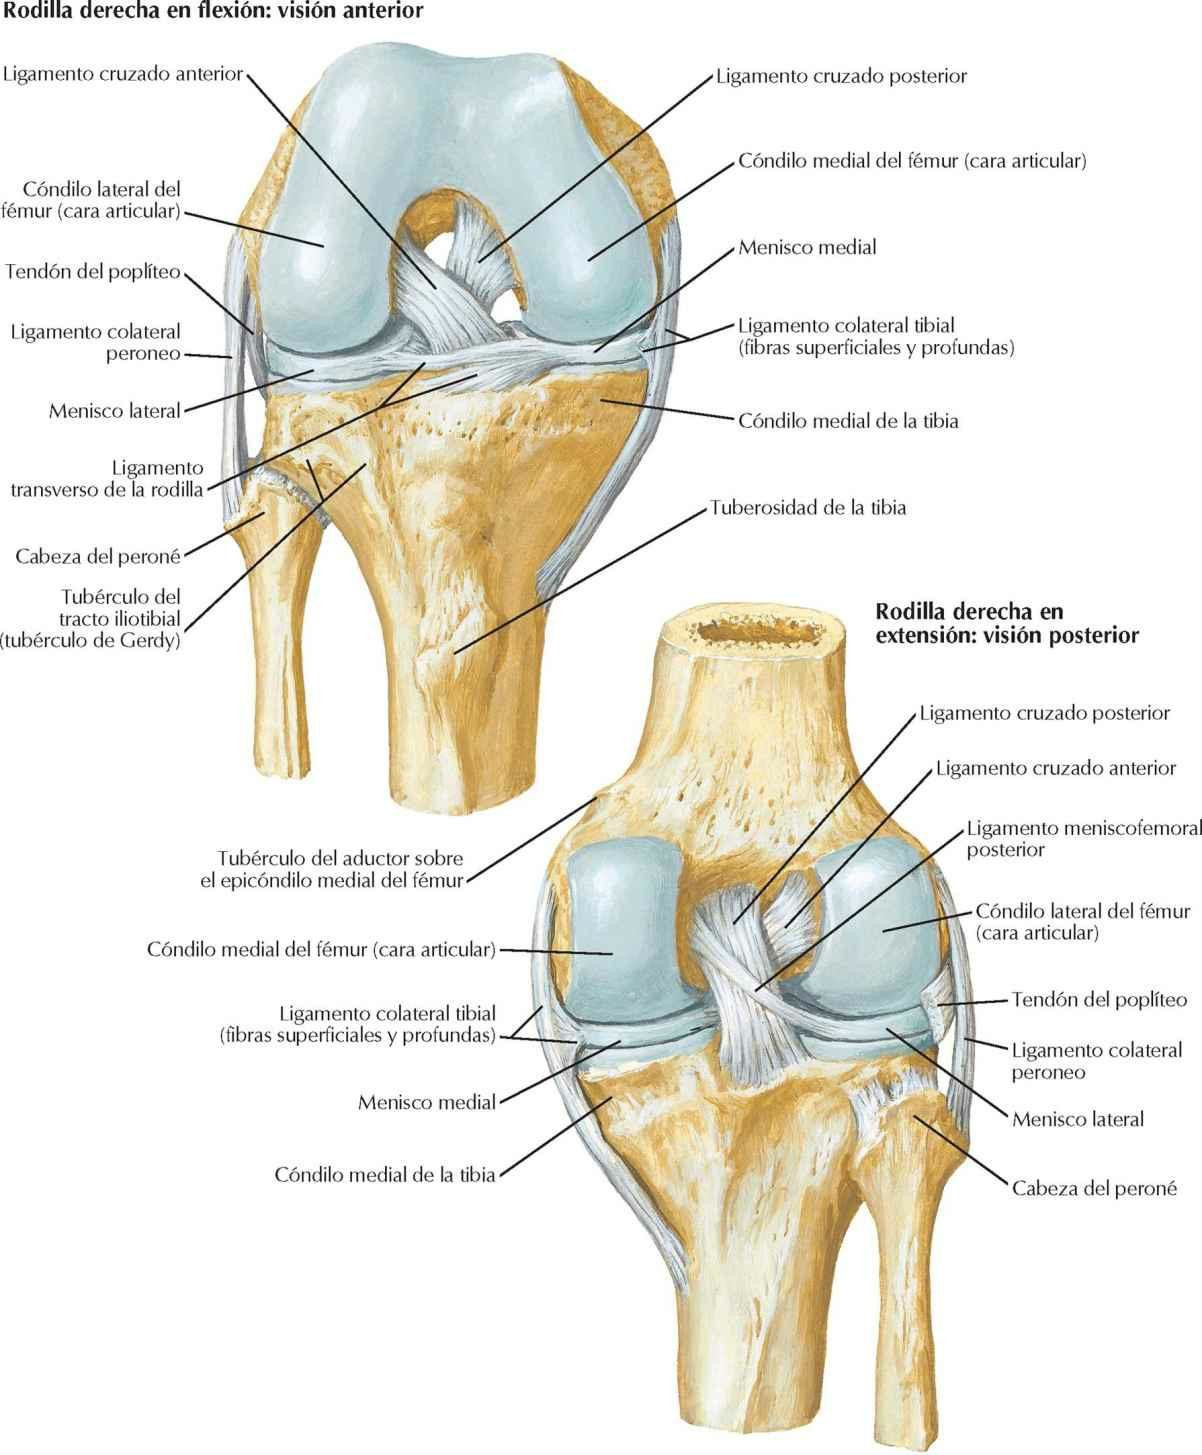 Rodilla: ligamentos cruzados y colaterales